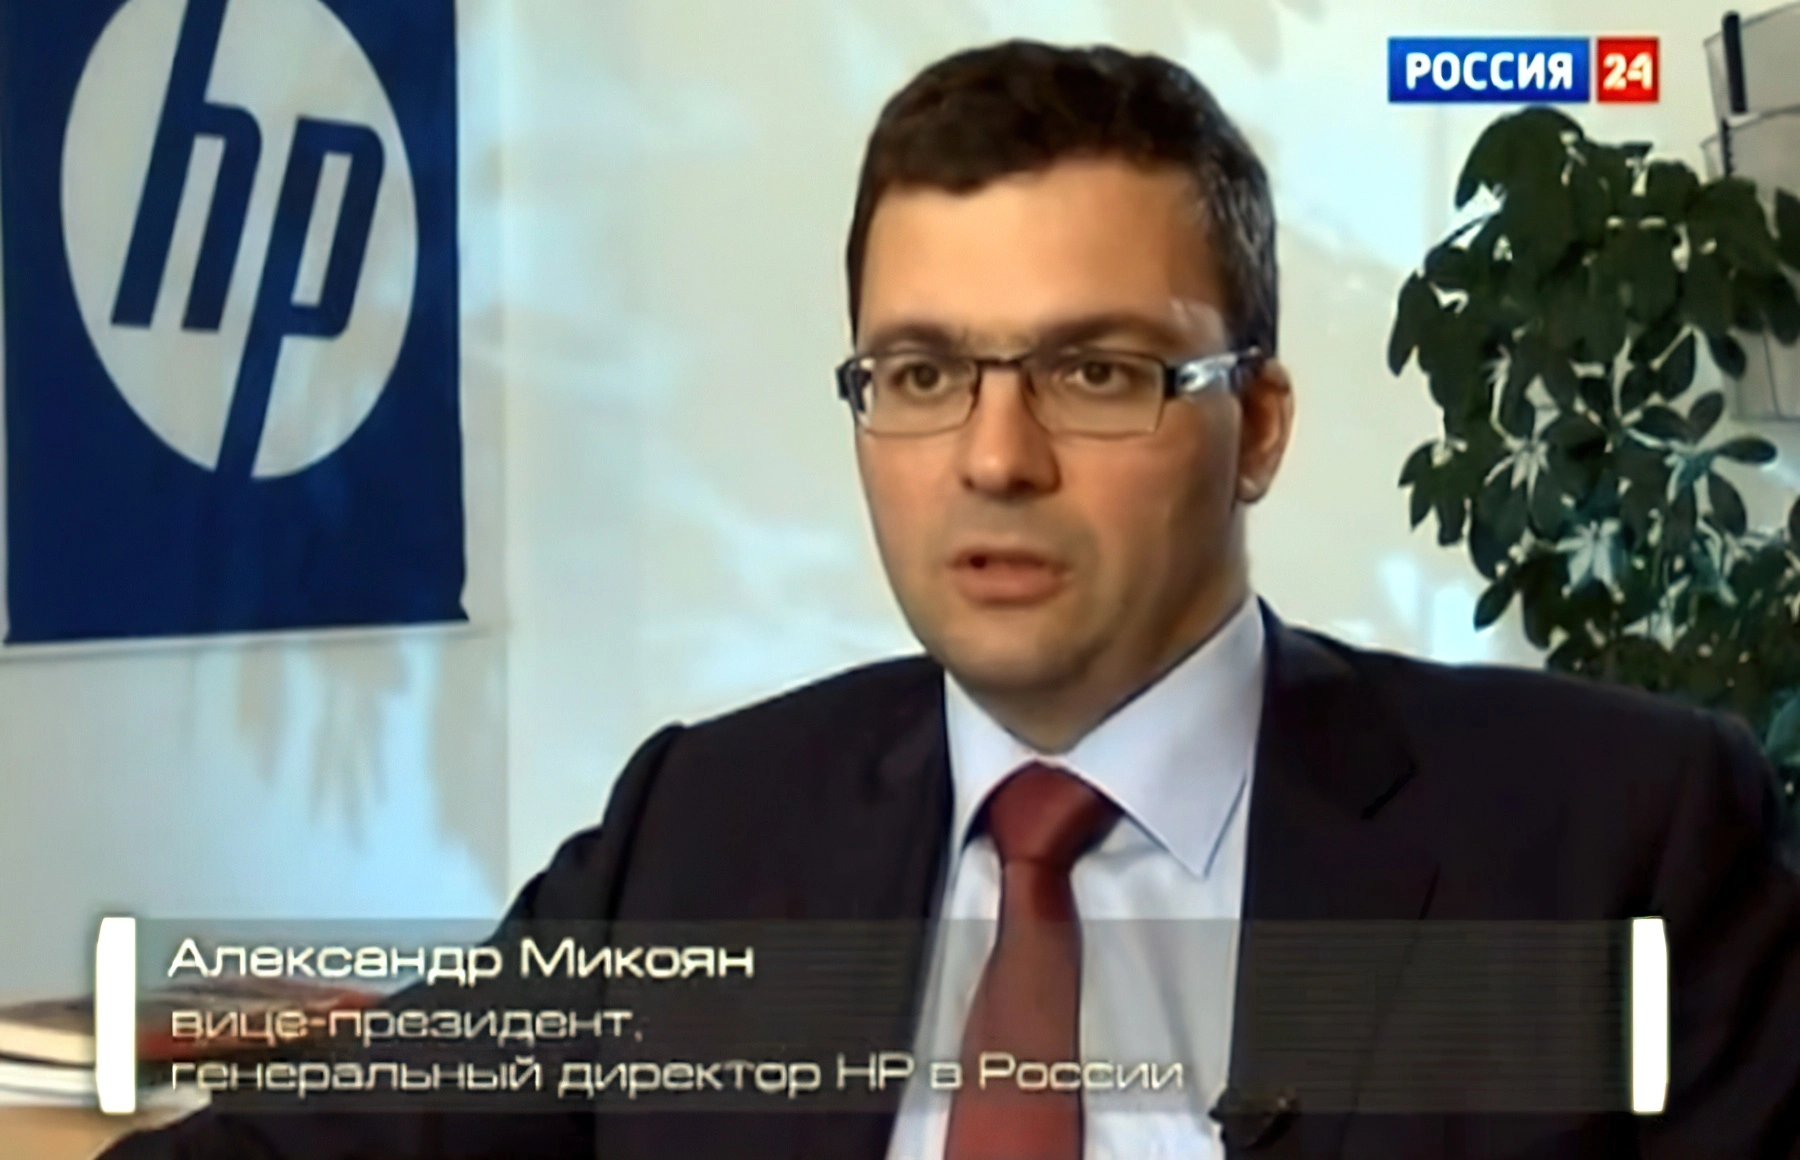 Александр Микоян - вице-президент и генеральный директор компании «Hewlett-Packard» в России